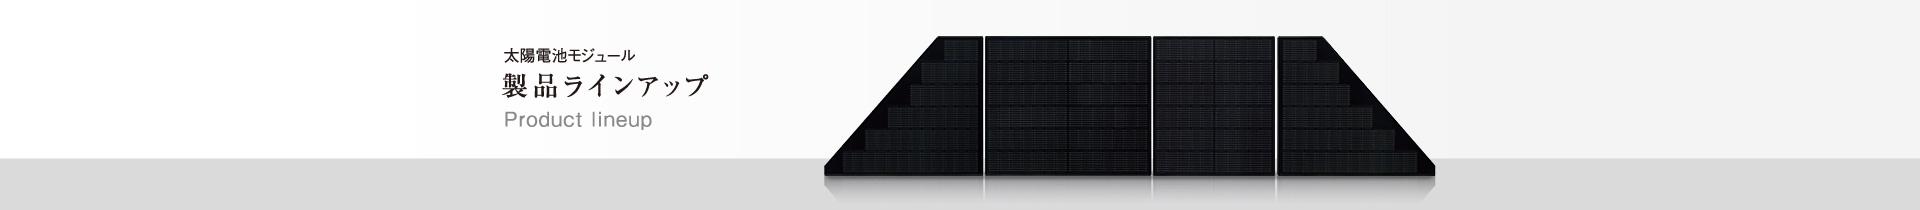 太陽電池モジュール製品ラインアップ／GOOD DESIGN AWARD 住宅用 高効率太陽光発電システム BLACKSOLAR＋ルーフィット設計・屋根全面システムにて。